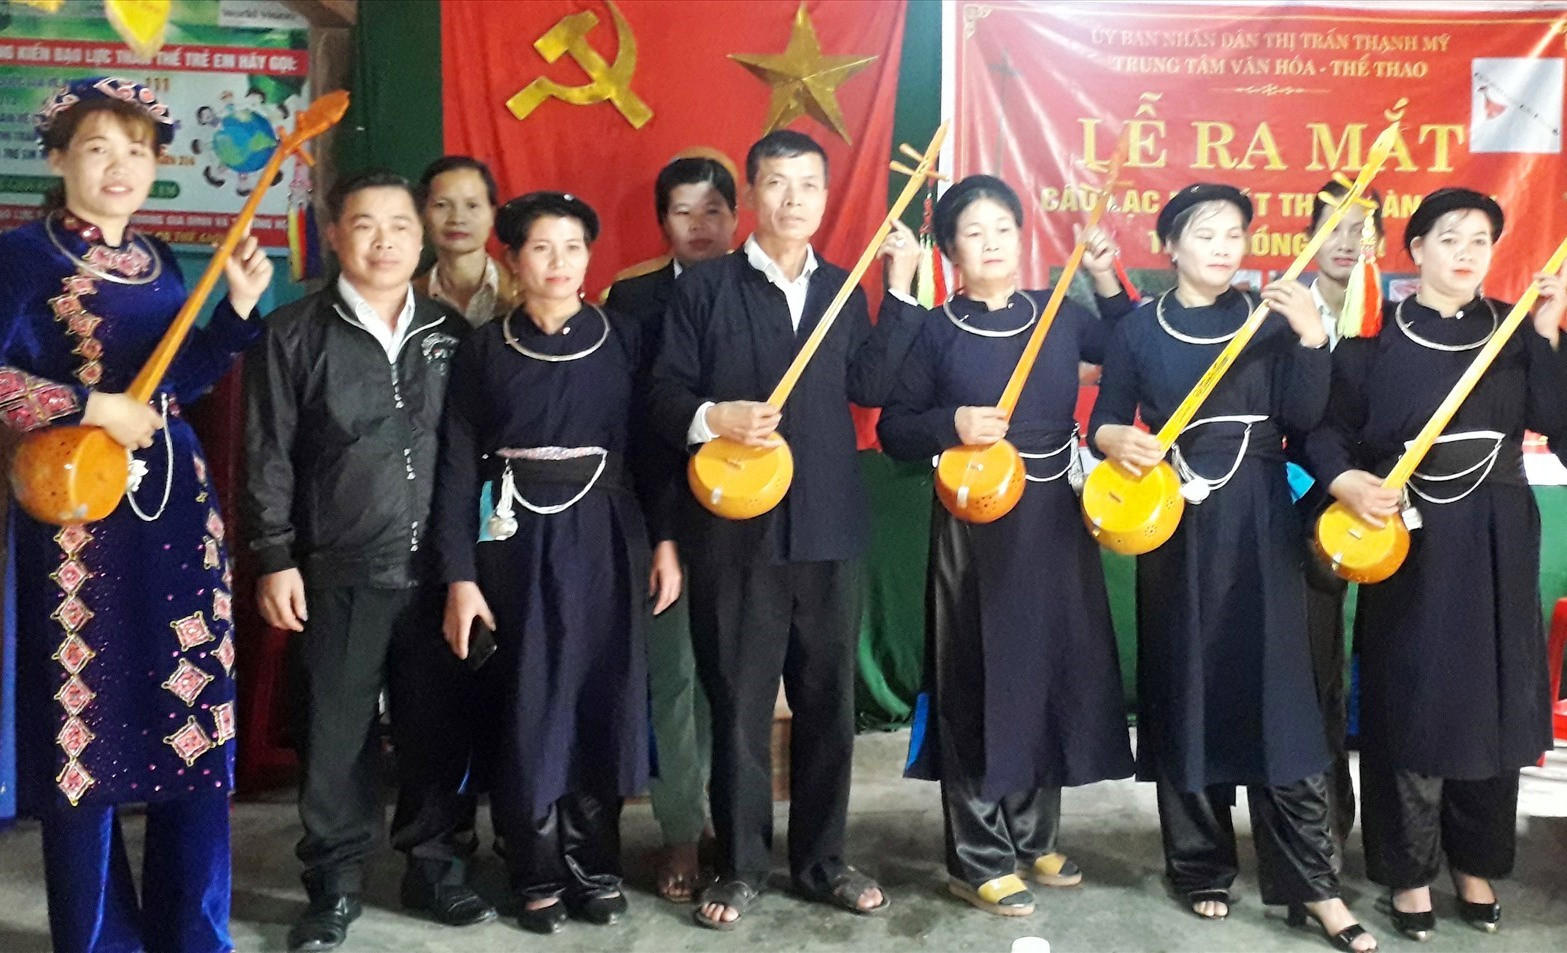 Các thành viên Câu lạc bộ Hát then đàn tính thôn Đồng Râm tại lễ ra mắt. Ảnh: V.THỦY